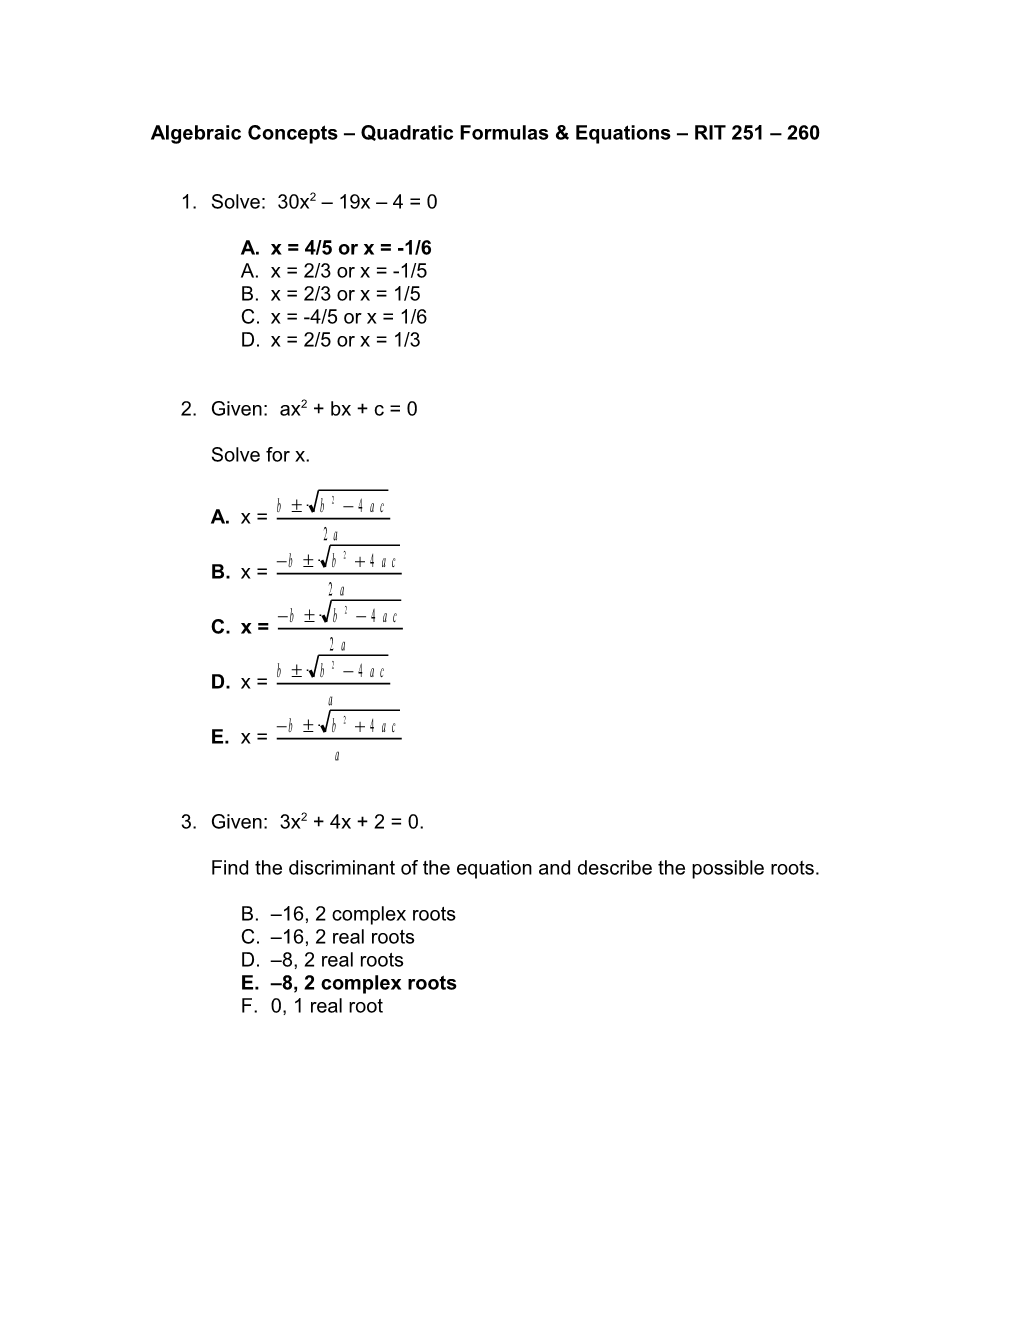 Algebraic Concepts Quadratic Formulas & Equations RIT 251 260